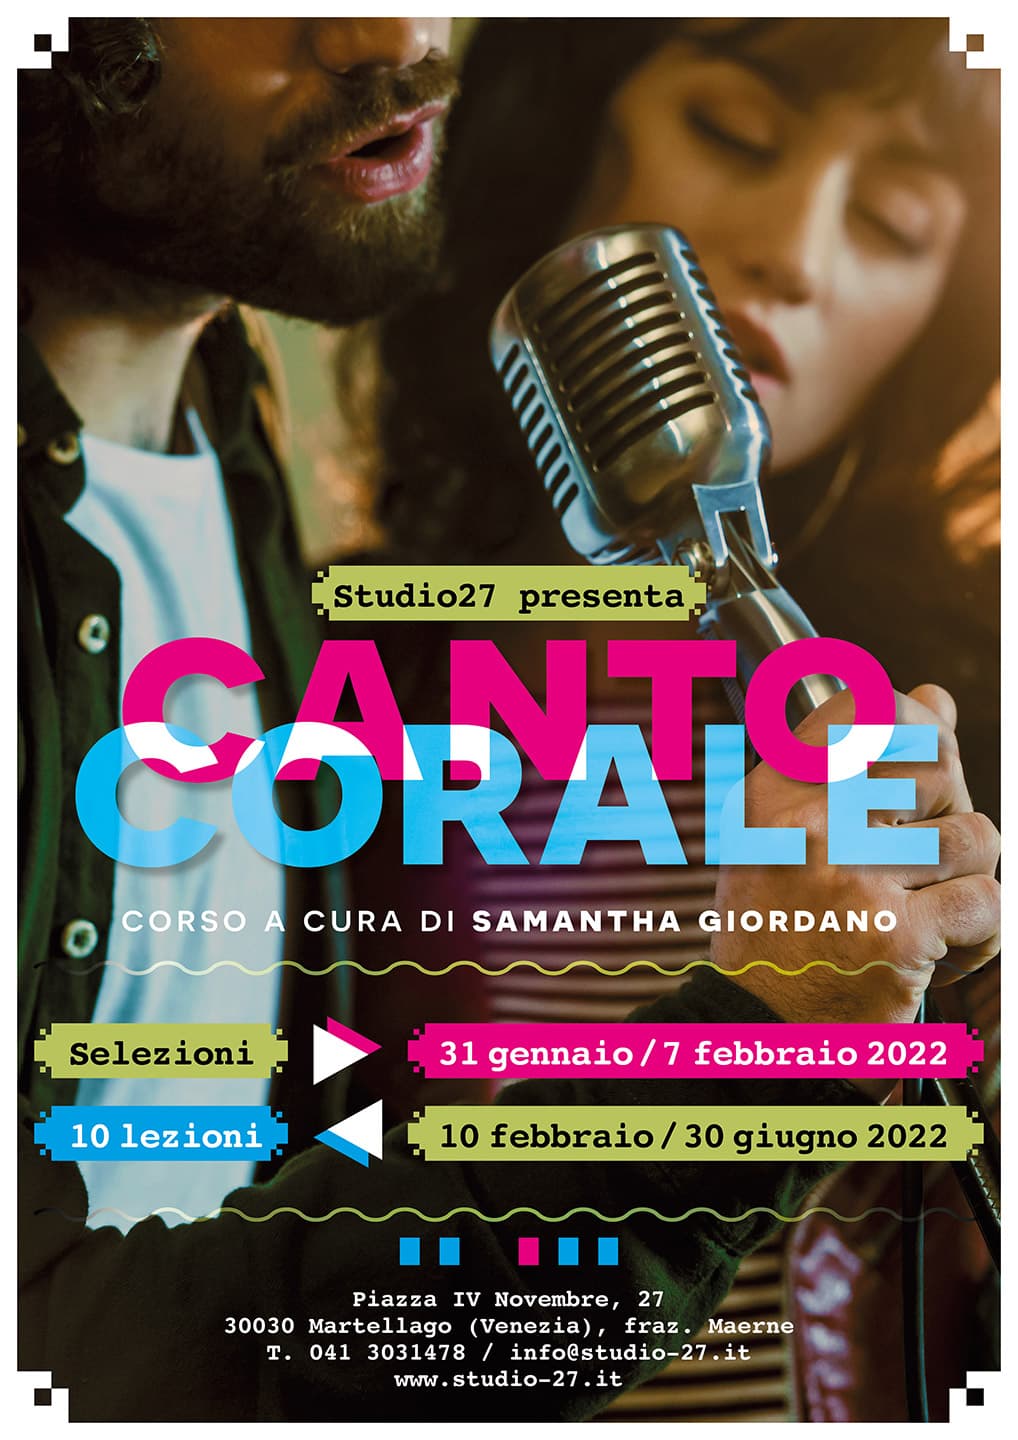 Studio27 - Corso di Canto Corale 2022